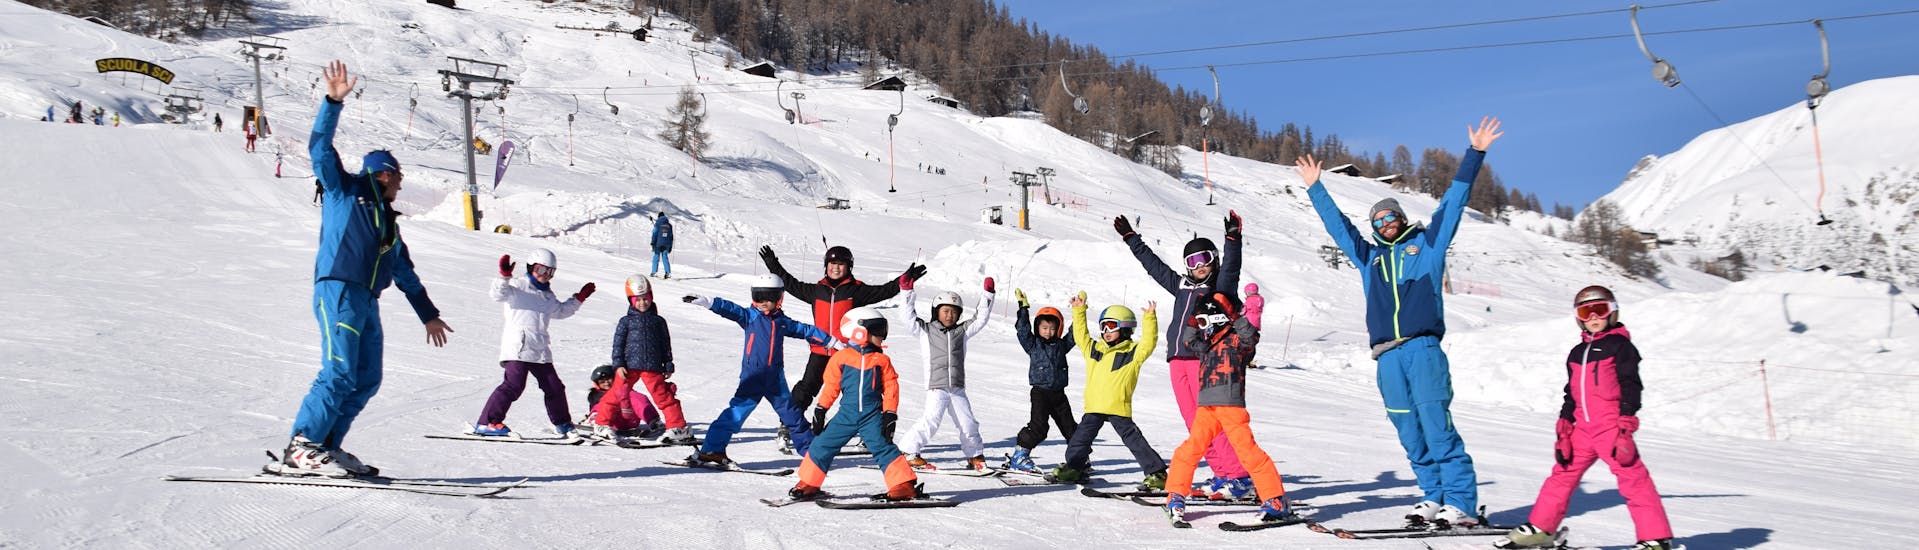 Tout le monde est heureux à Livigno pendant un des cours de ski pour enfants de tous niveaux.